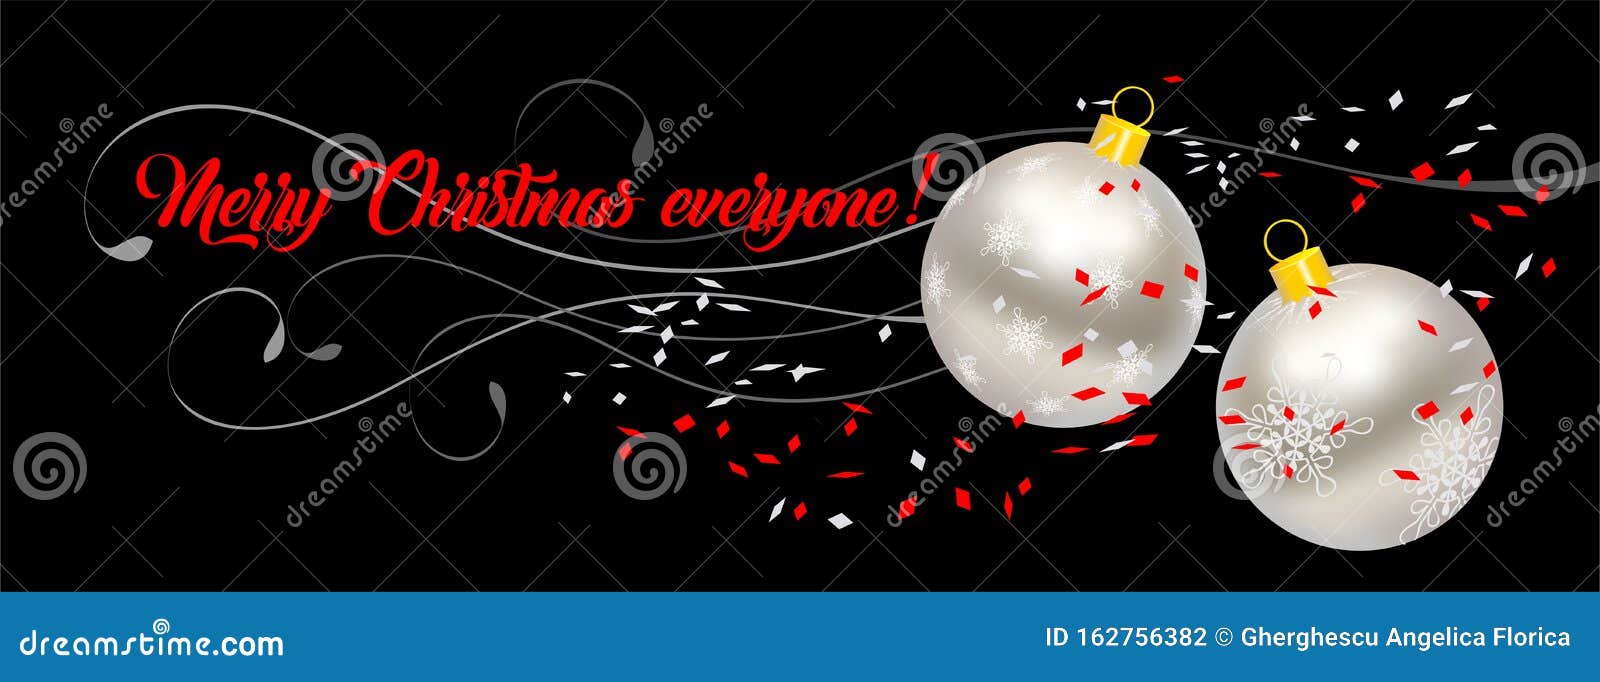 christmas banner with christmas balls and confeti - 